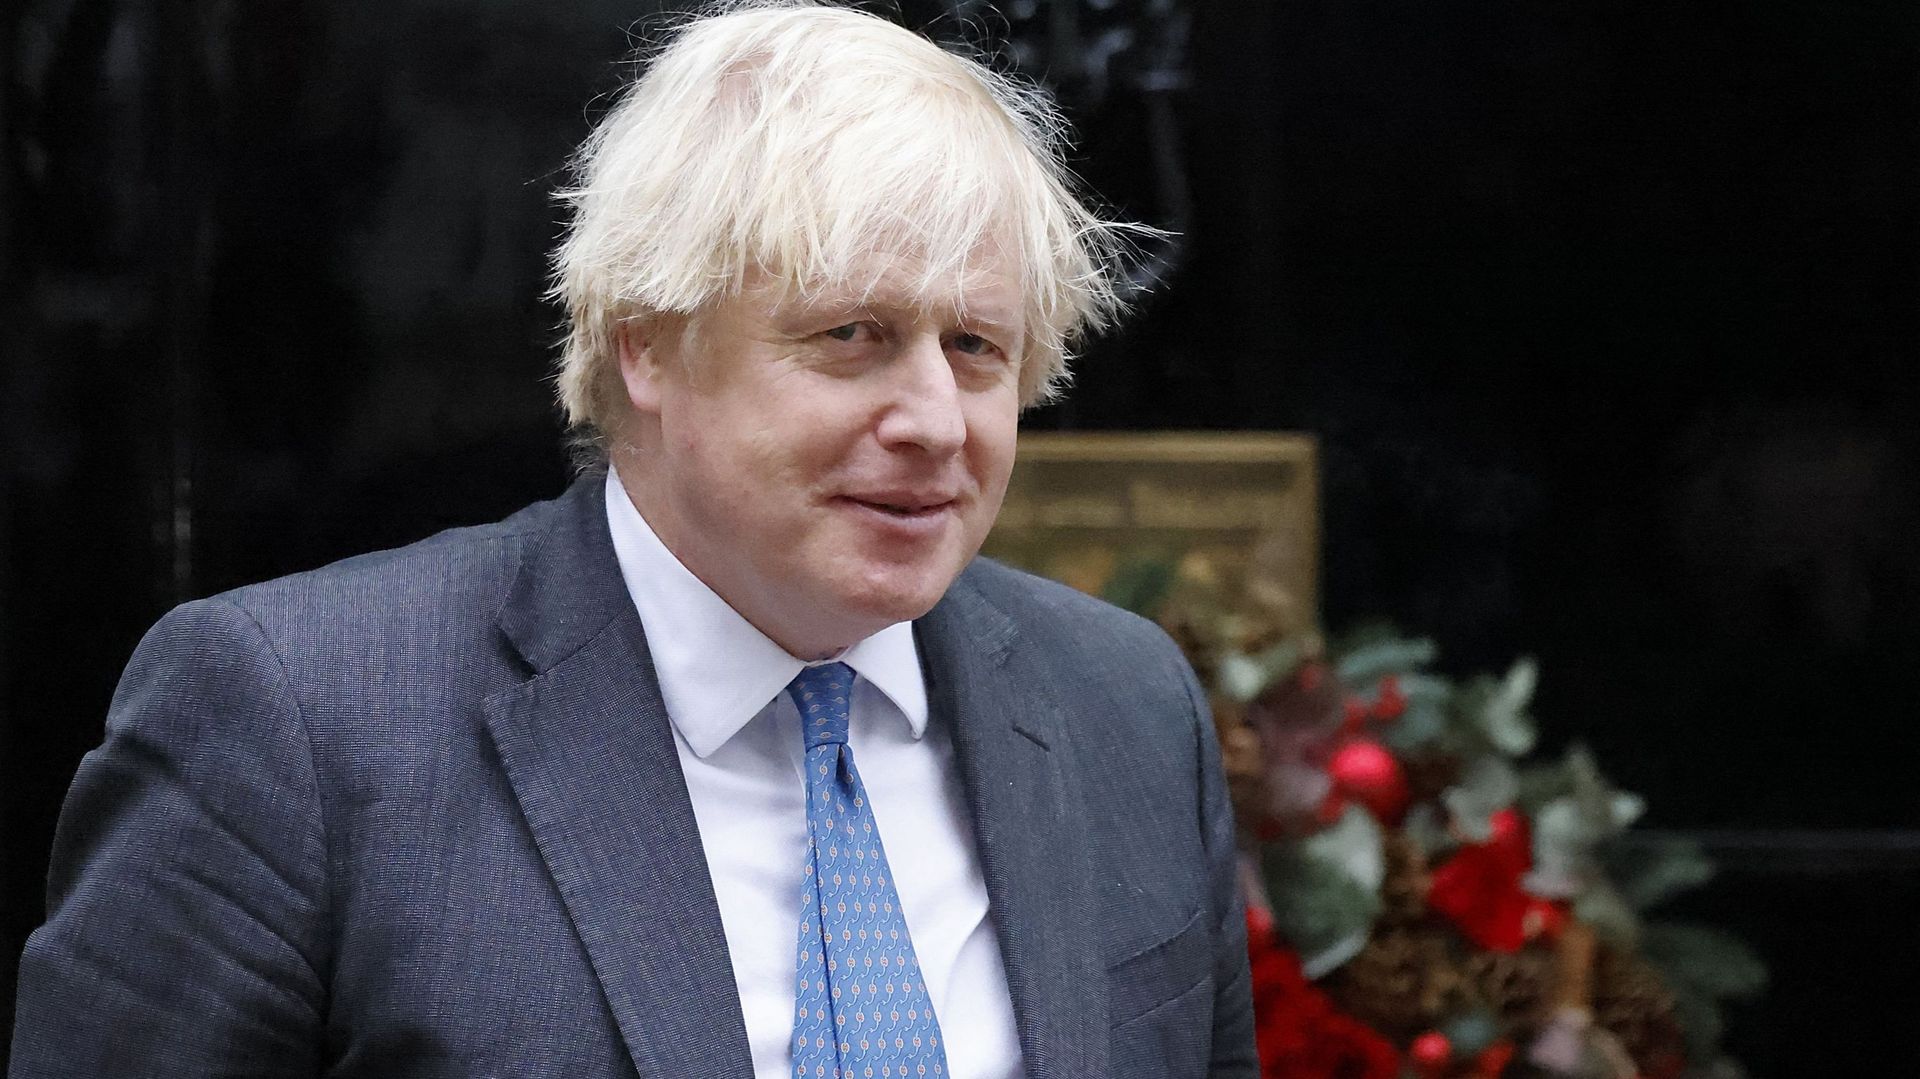 Le Premier ministre britannique Boris Johnson a dit vendredi "assumer" la responsabilité d’une défaite de son parti conservateur